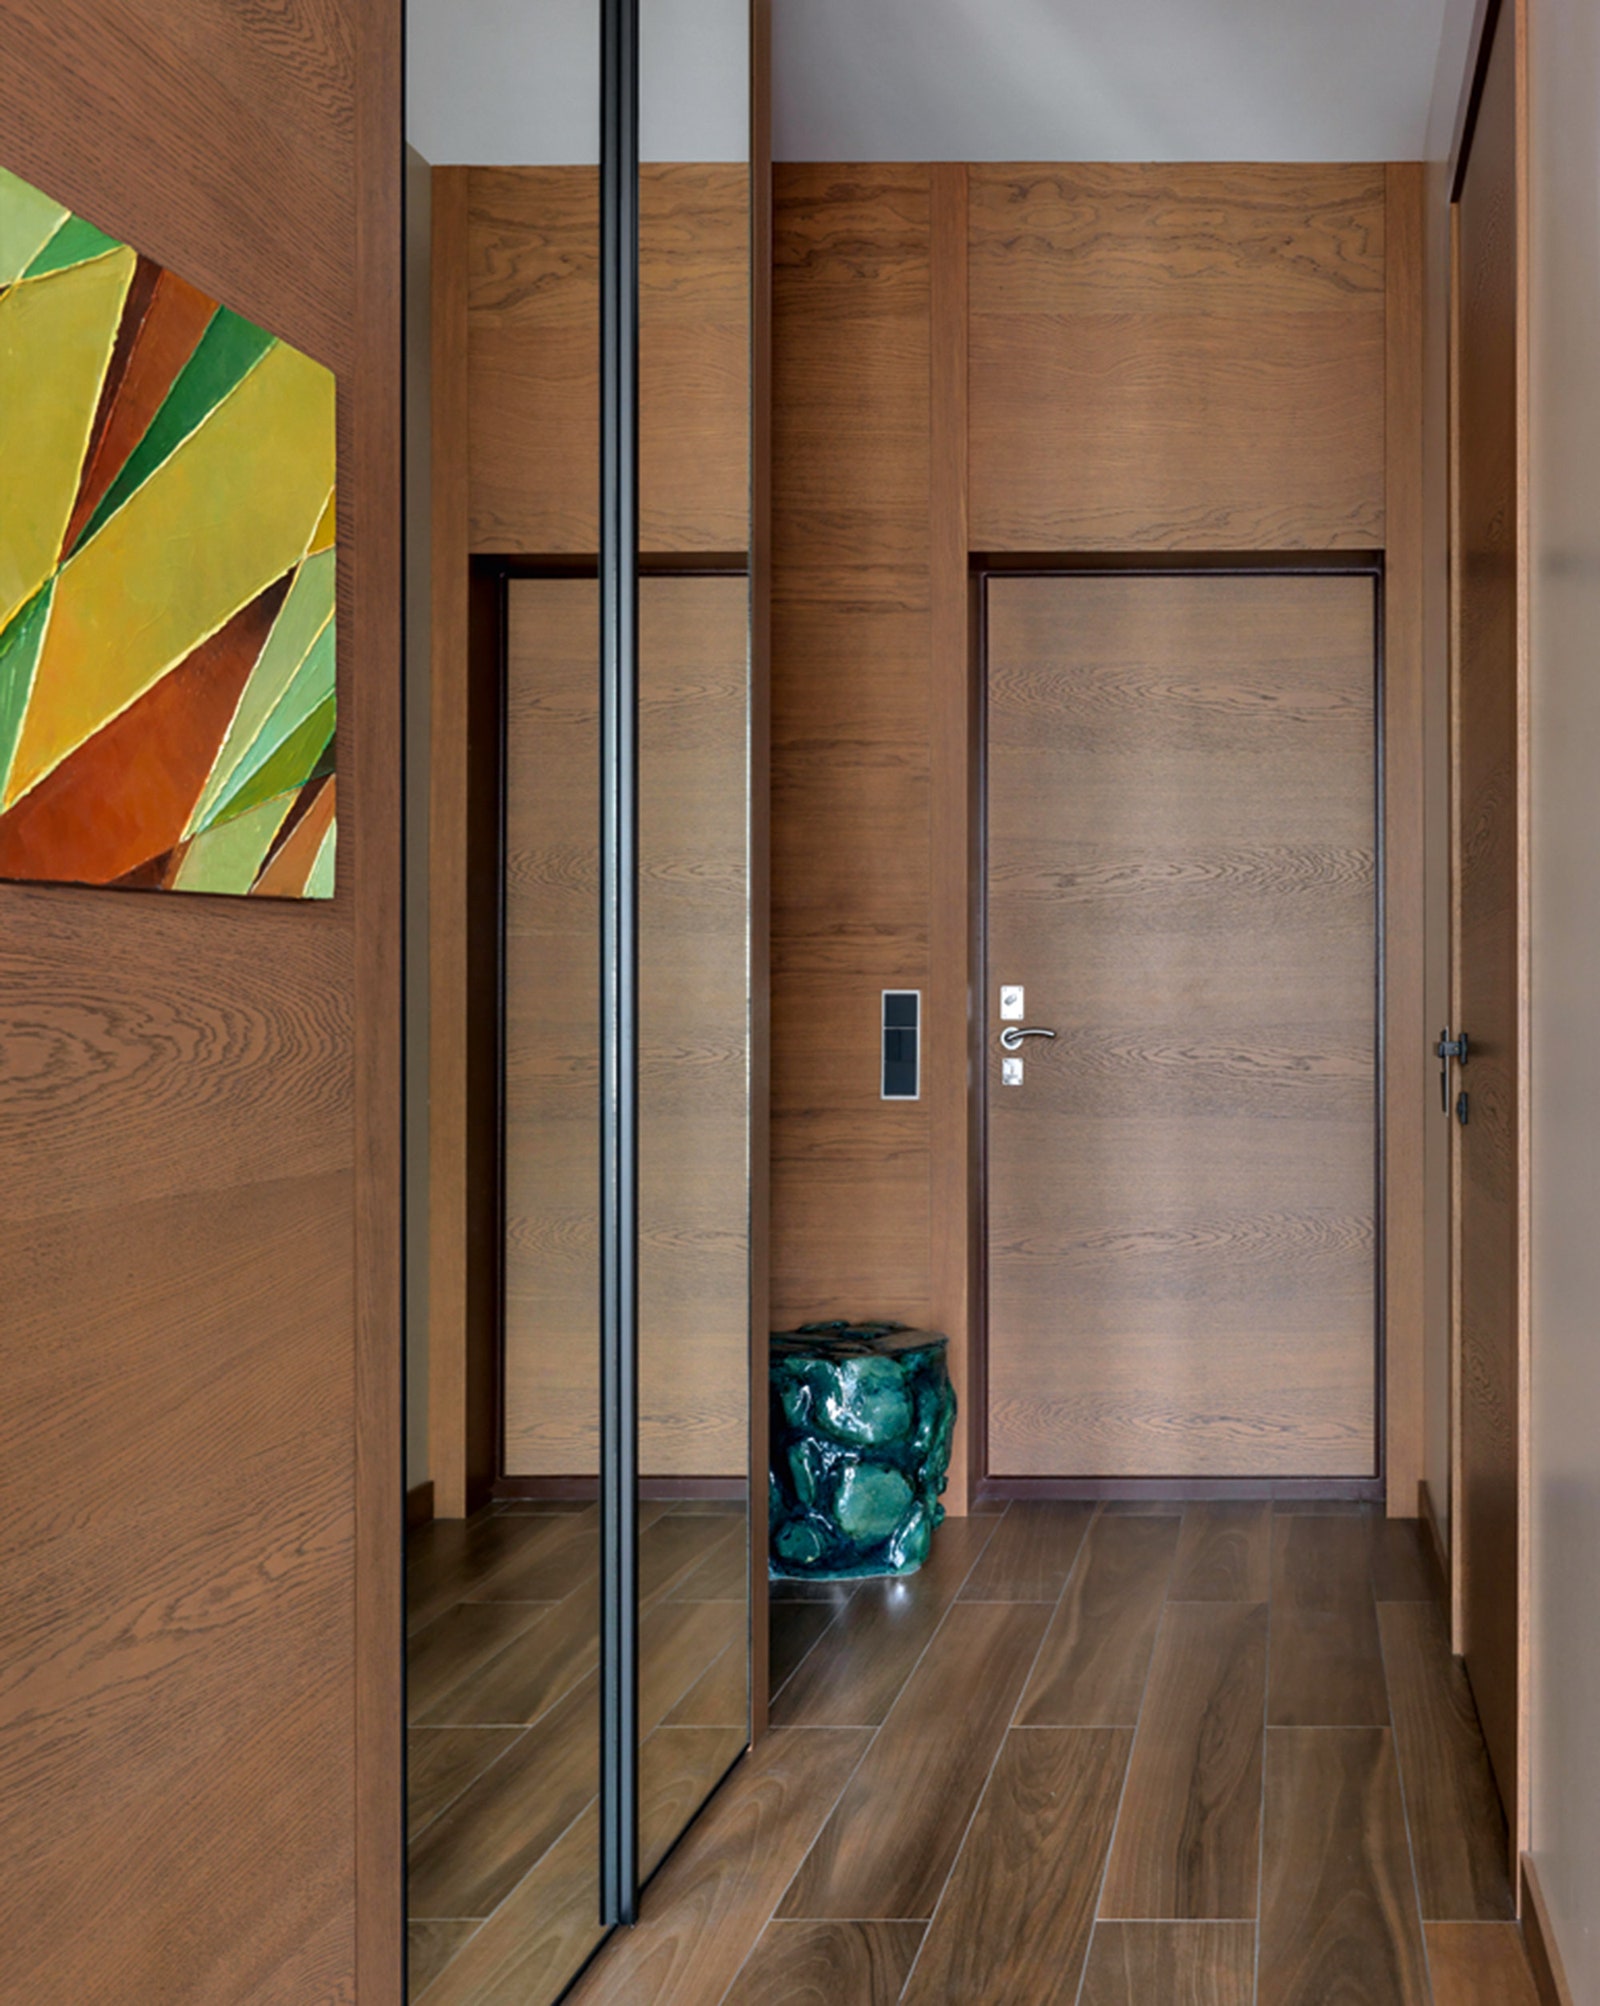 Прихожая. Двери встроенные шкафы и стеновые панели сделаны на заказ компанией John Golt керамический пуф студия Savour...